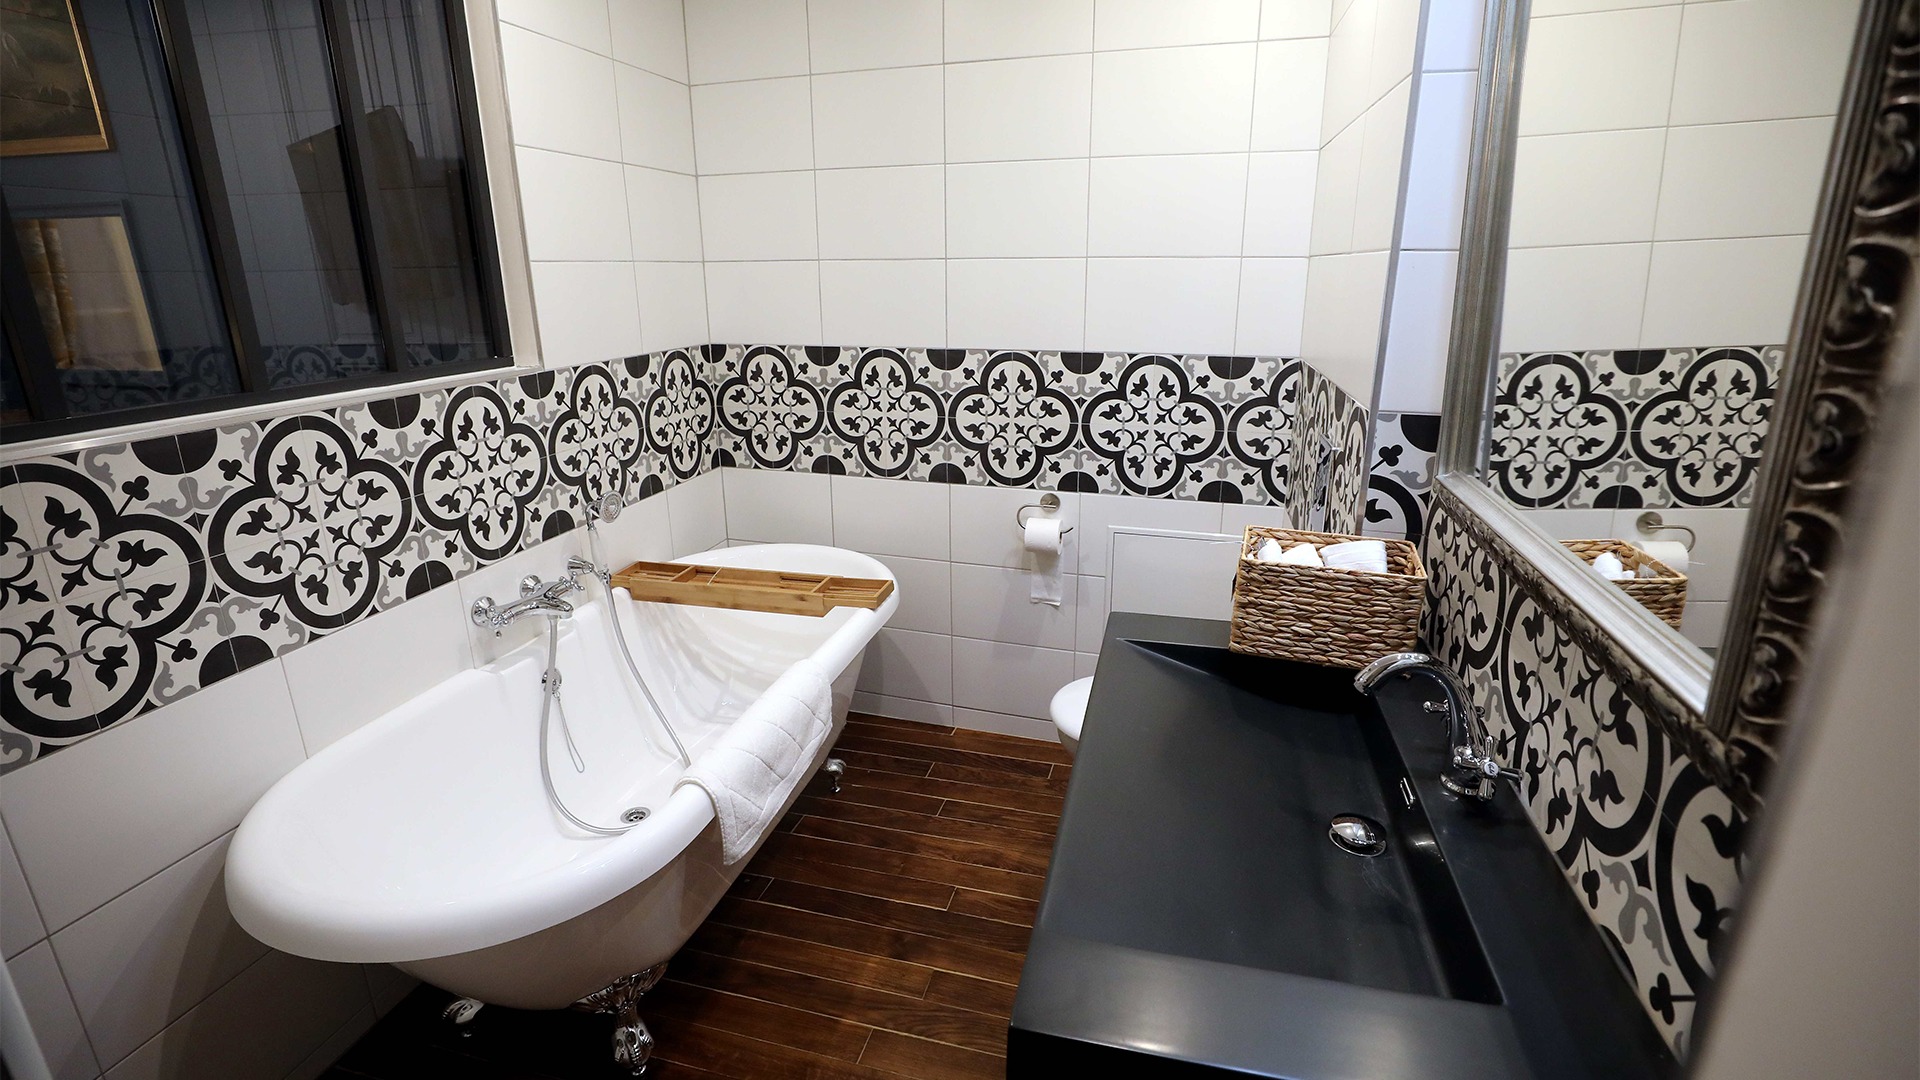 Salle de bain carrelé en blanc avec un liseré à motifs noir, une baignoire d'époque et vasque en pierre noire